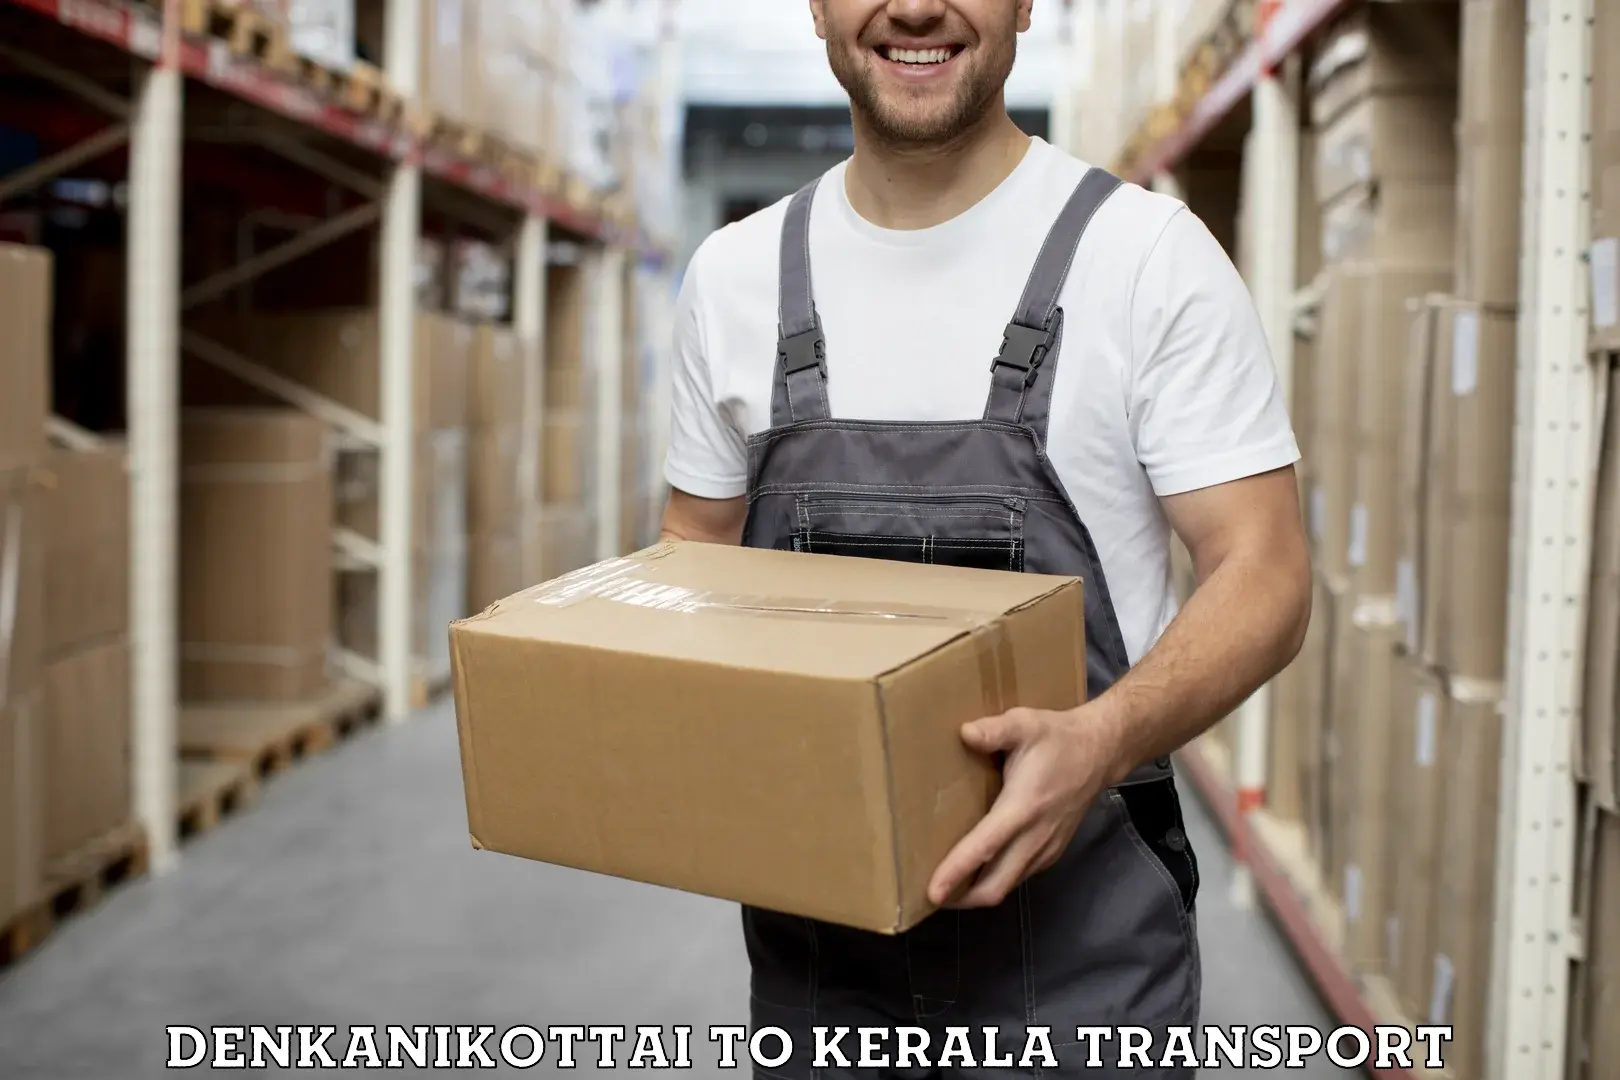 Transport in sharing Denkanikottai to Kallikkad